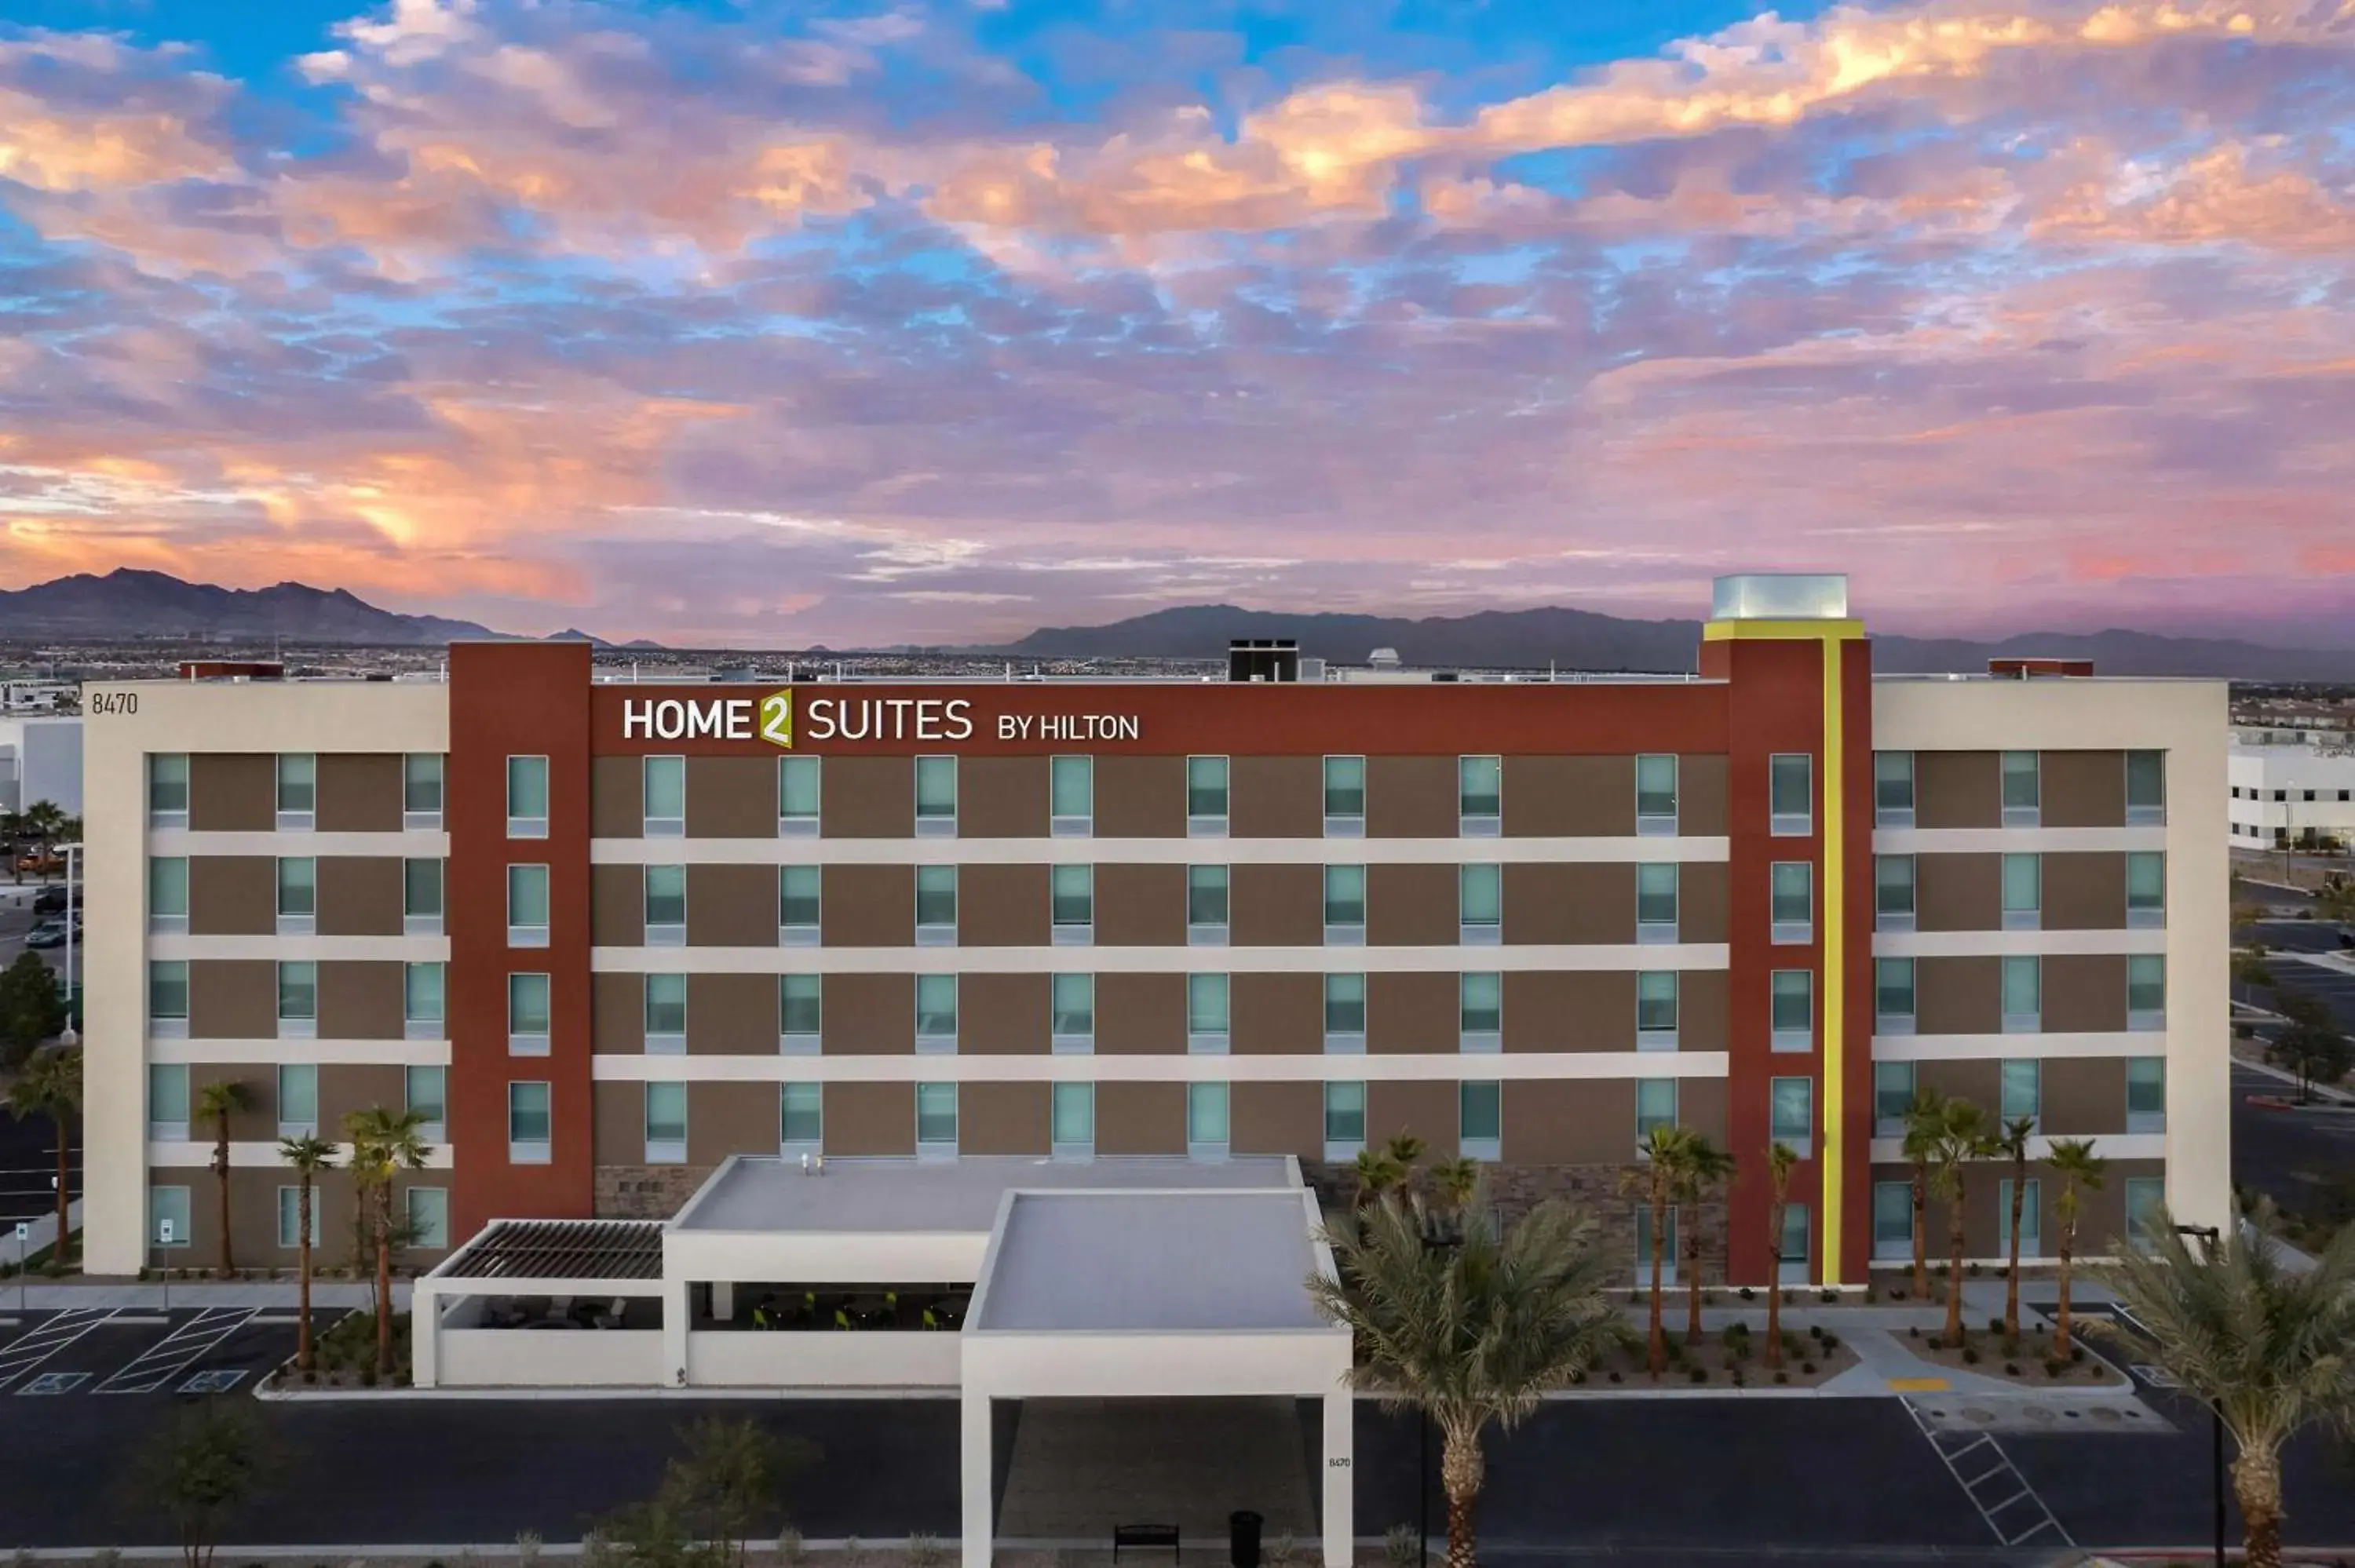 Property Building in Home2 Suites By Hilton Las Vegas Southwest I-215 Curve